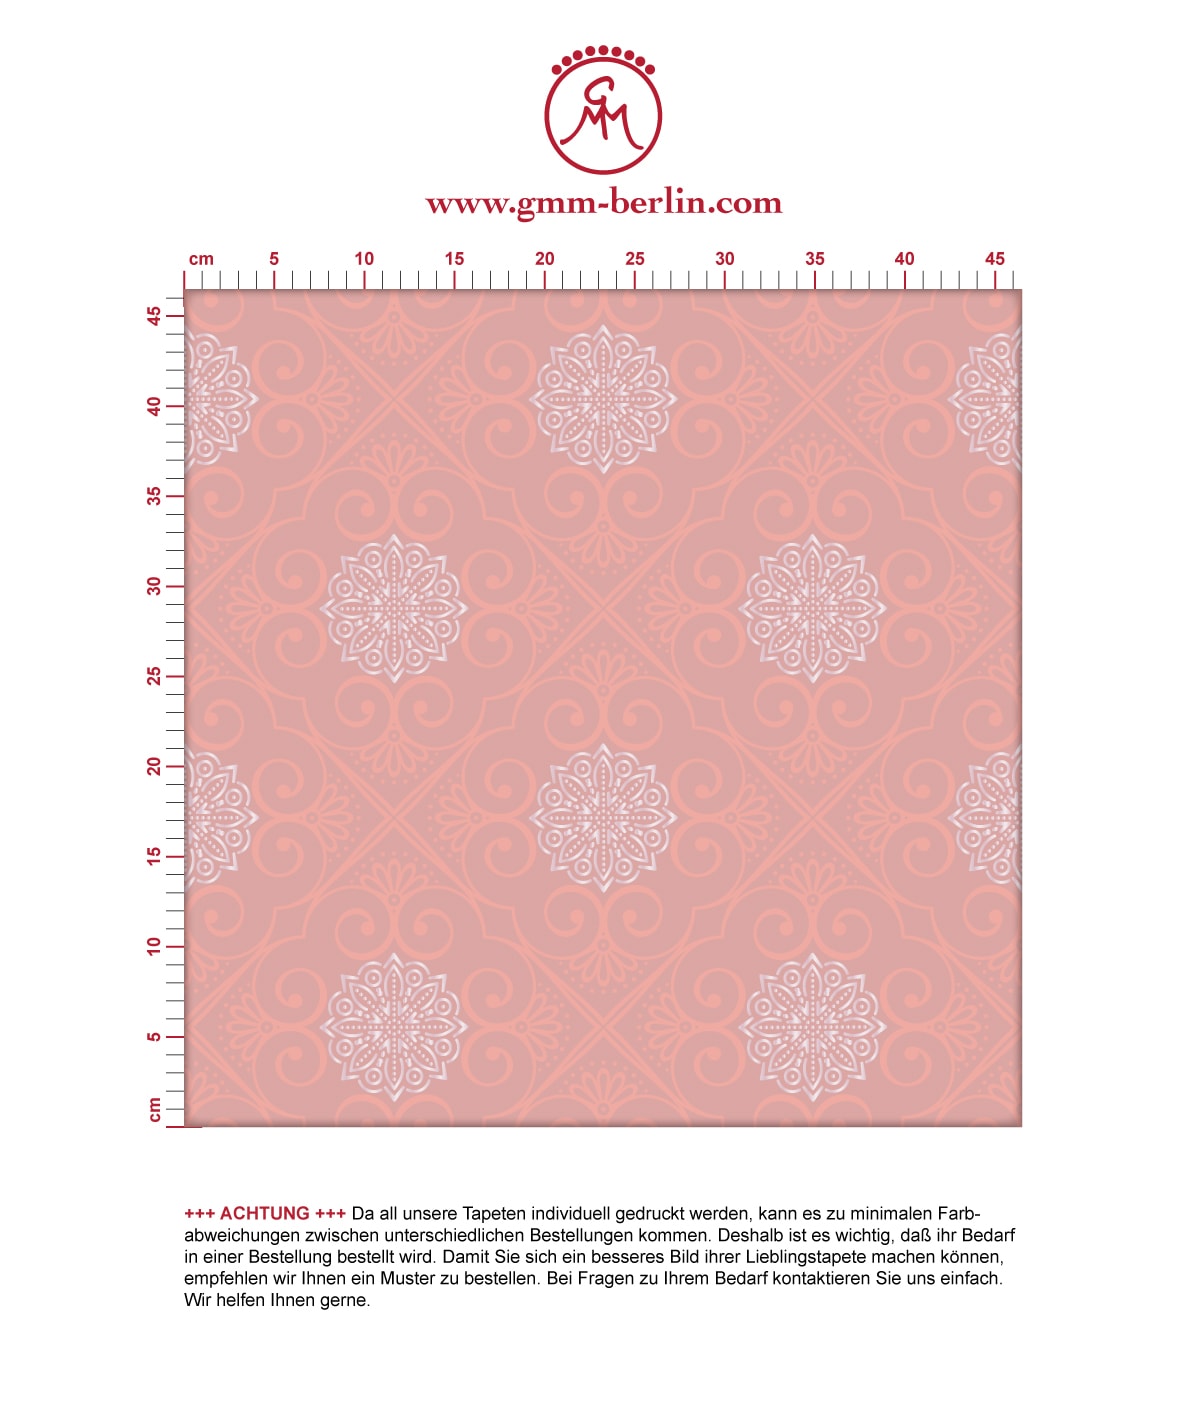 Oriental Tapete "Mandarin", rosa Vlies Tapete exklusive Ornamenttapete für Flur, Büro. Aus dem GMM-BERLIN.com Sortiment: Schöne Tapeten in der Farbe: Pink